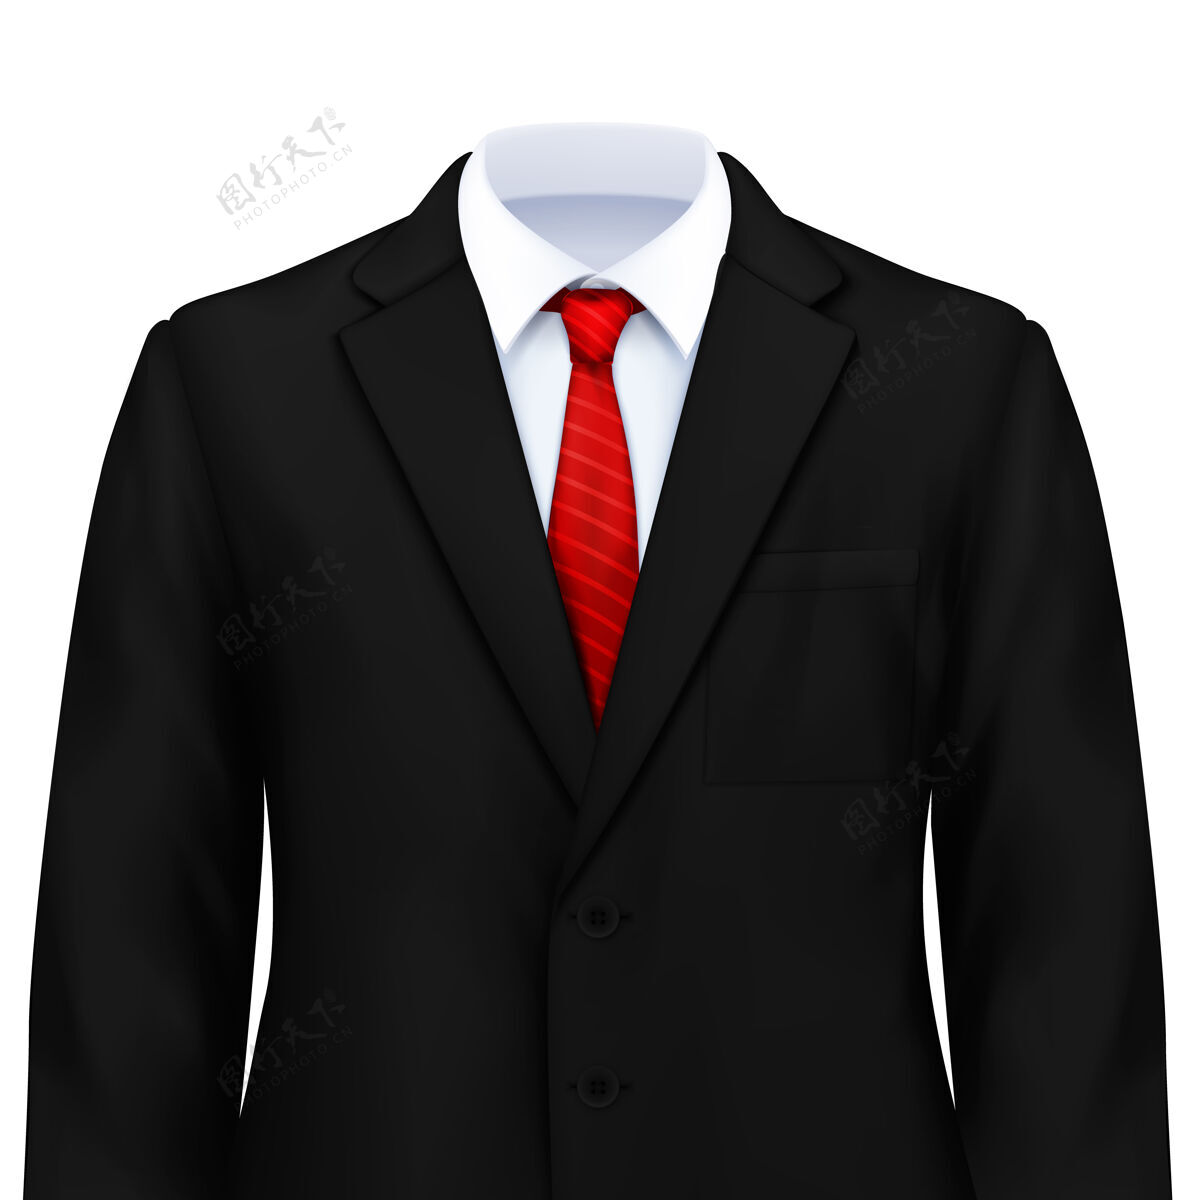 西装男装写实的构图与智能服装搭配白色衬衫领带和夹克模特时尚销售